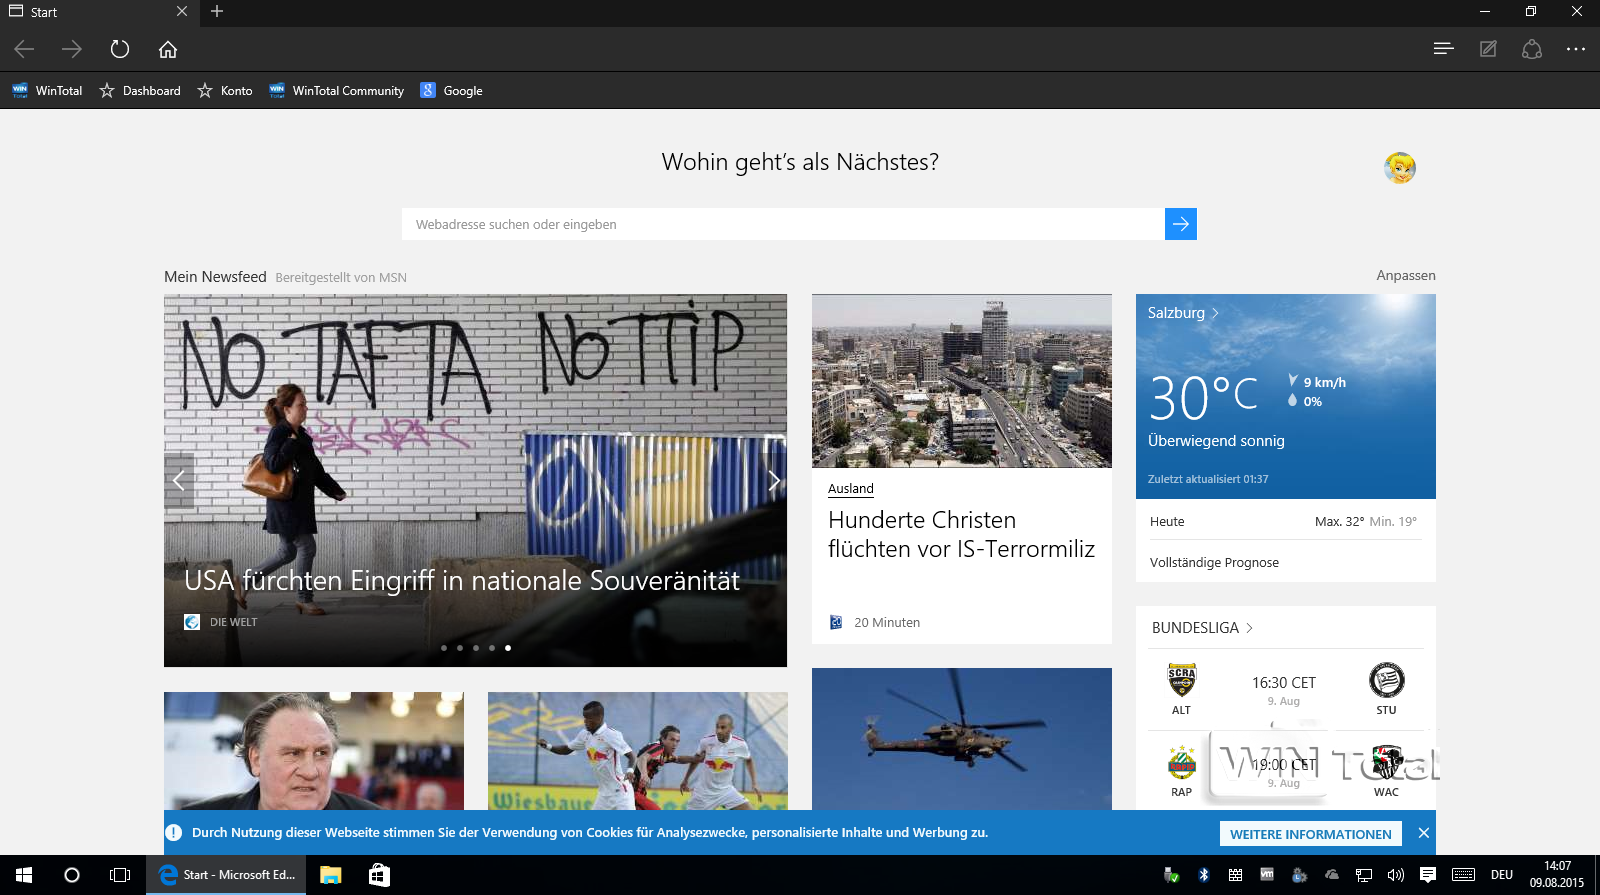 Startseite Edge in Windows 10 im Jahr 2015